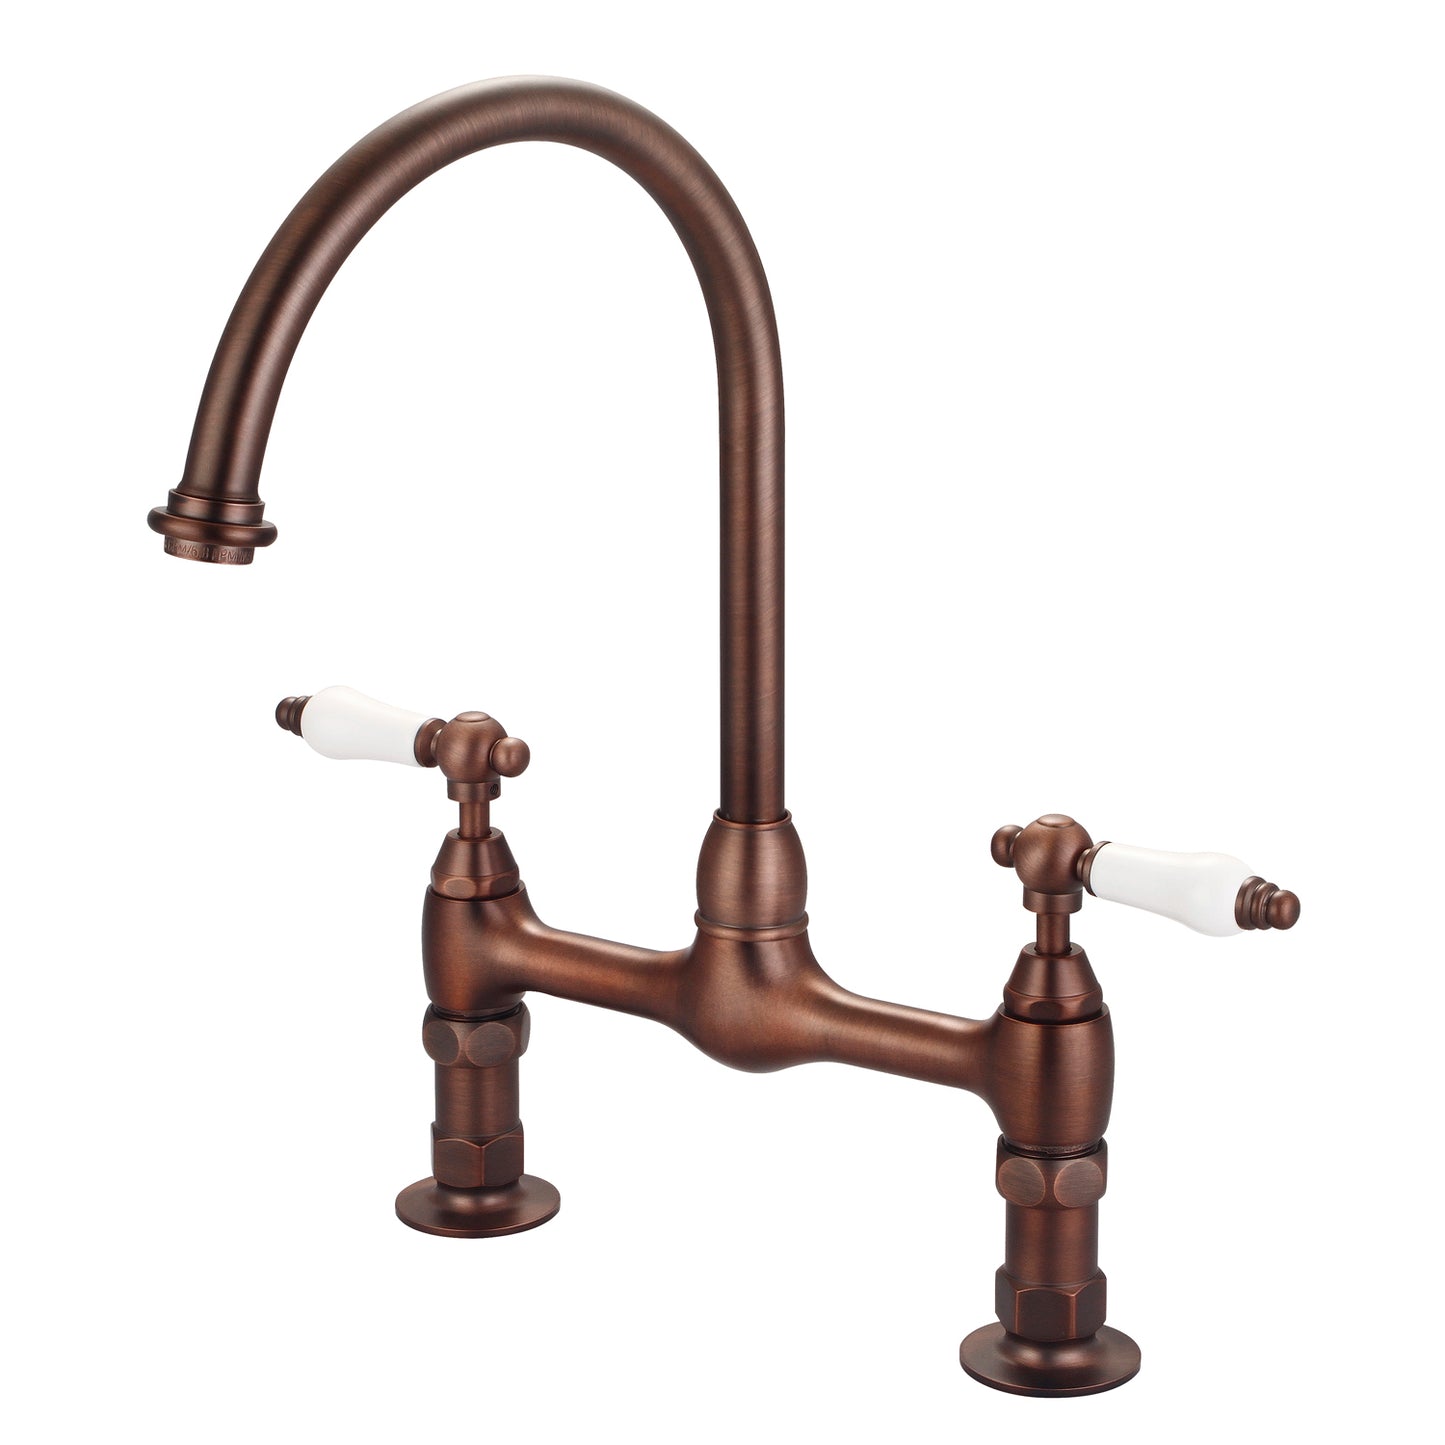 Harding Kitchen Bridge Faucet, Porcelain Lever Handles, Oil Rubbed Bronze